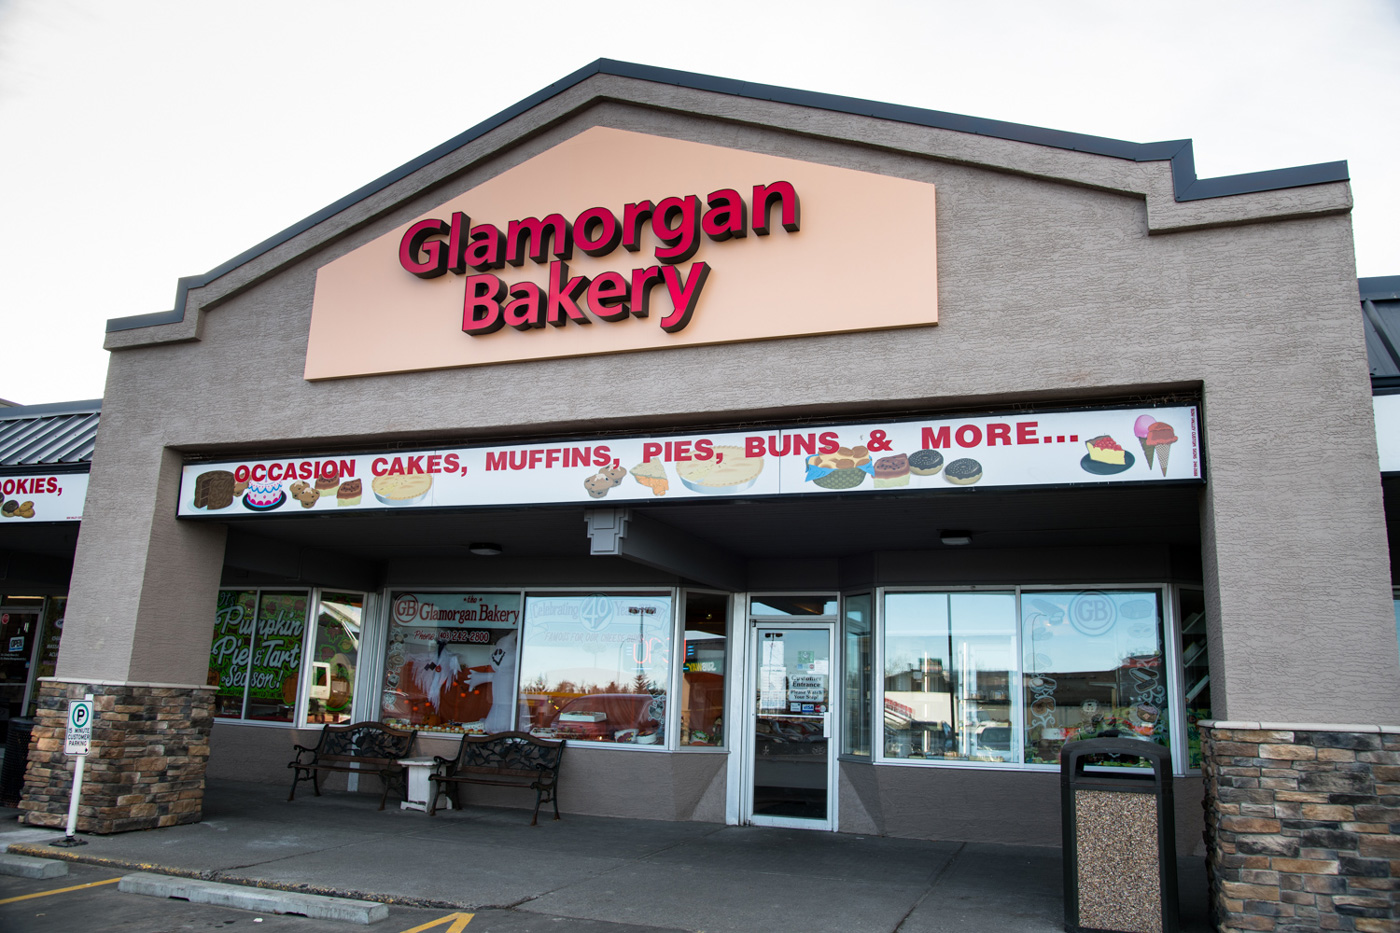 Glamorgan bakery, Calgary